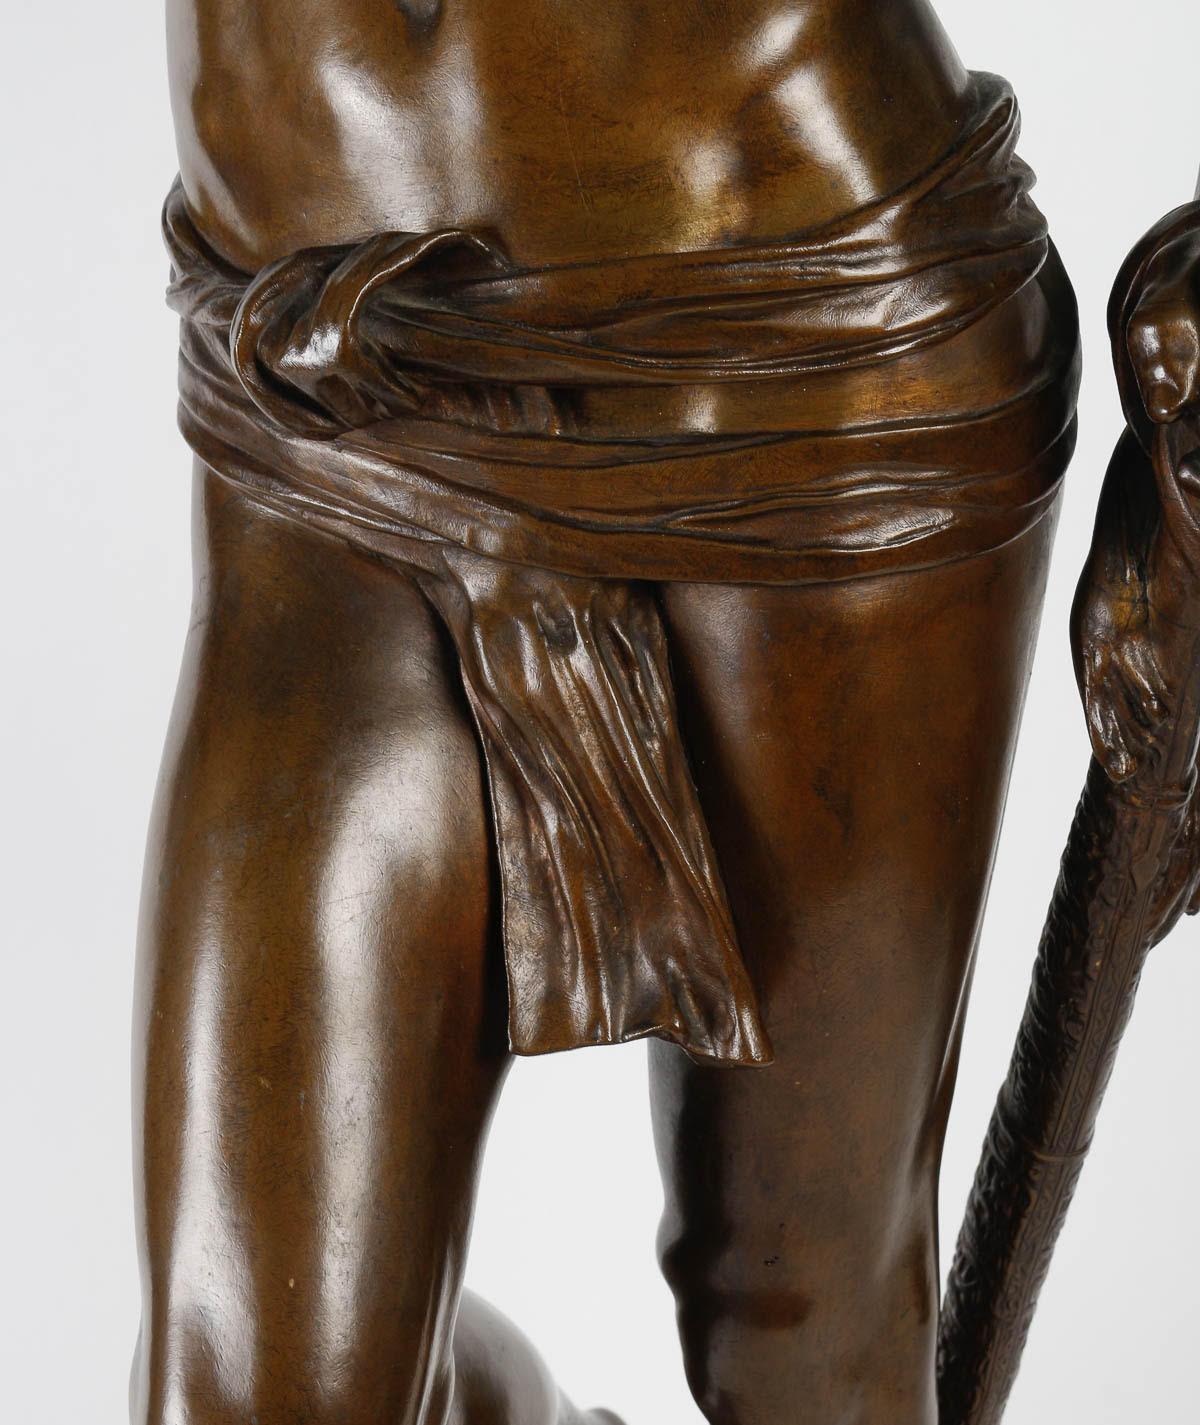 Bronze sculpture by Antonin Mercier (1845-1916).

Napoleon III period sculpture, 19th century, by Antonin Mercier, 